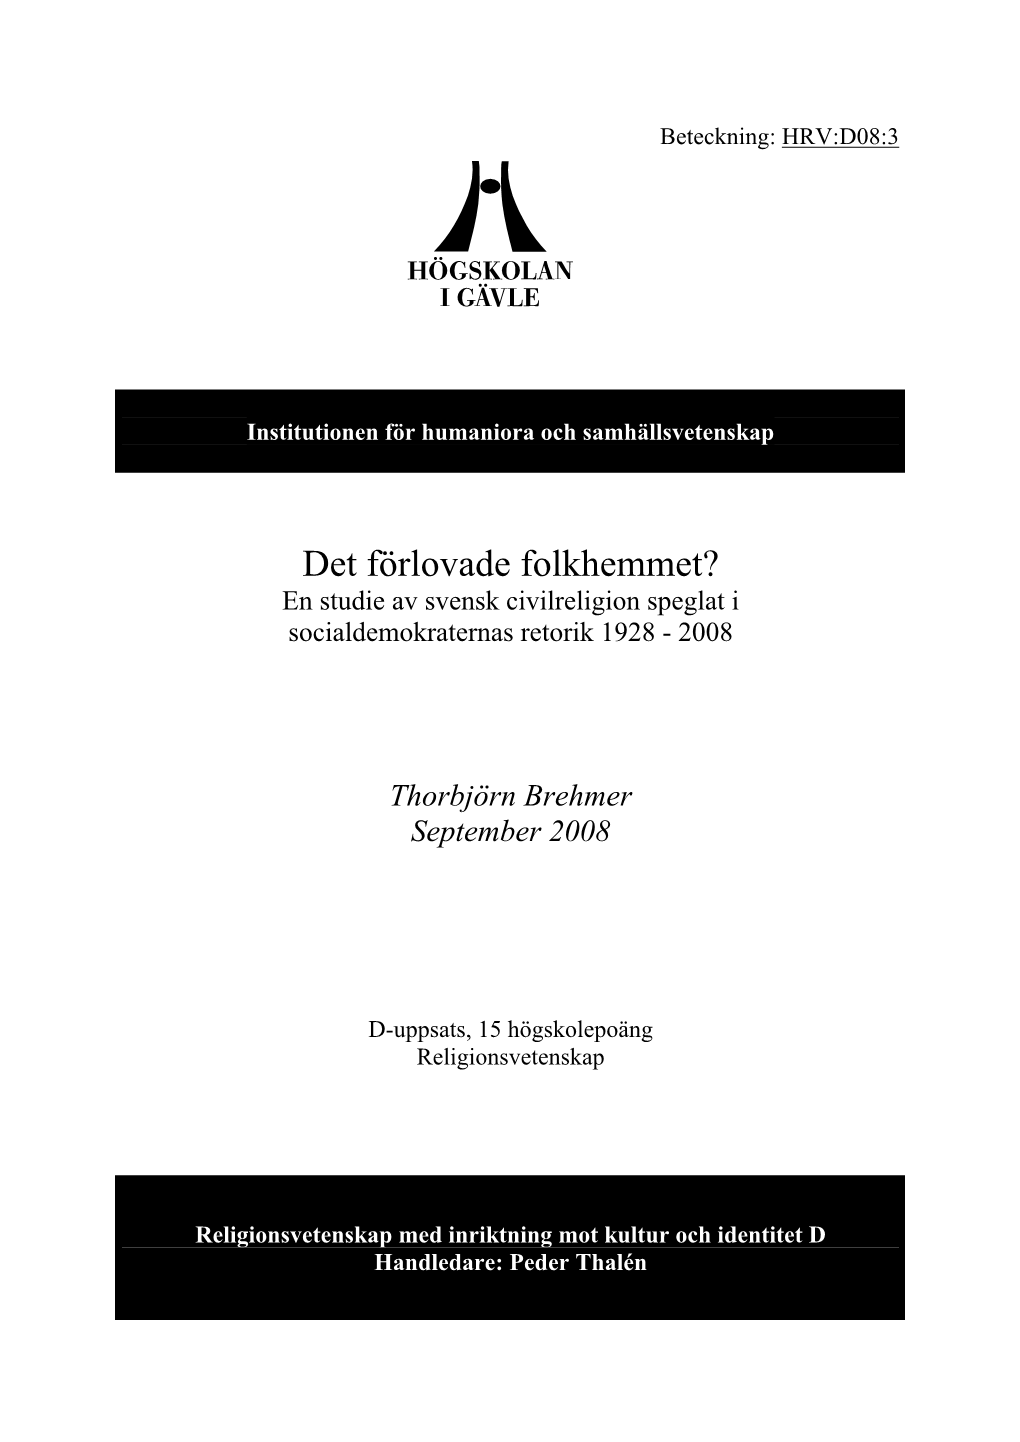 Det Förlovade Folkhemmet? En Studie Av Svensk Civilreligion Speglat I Socialdemokraternas Retorik 1928 - 2008